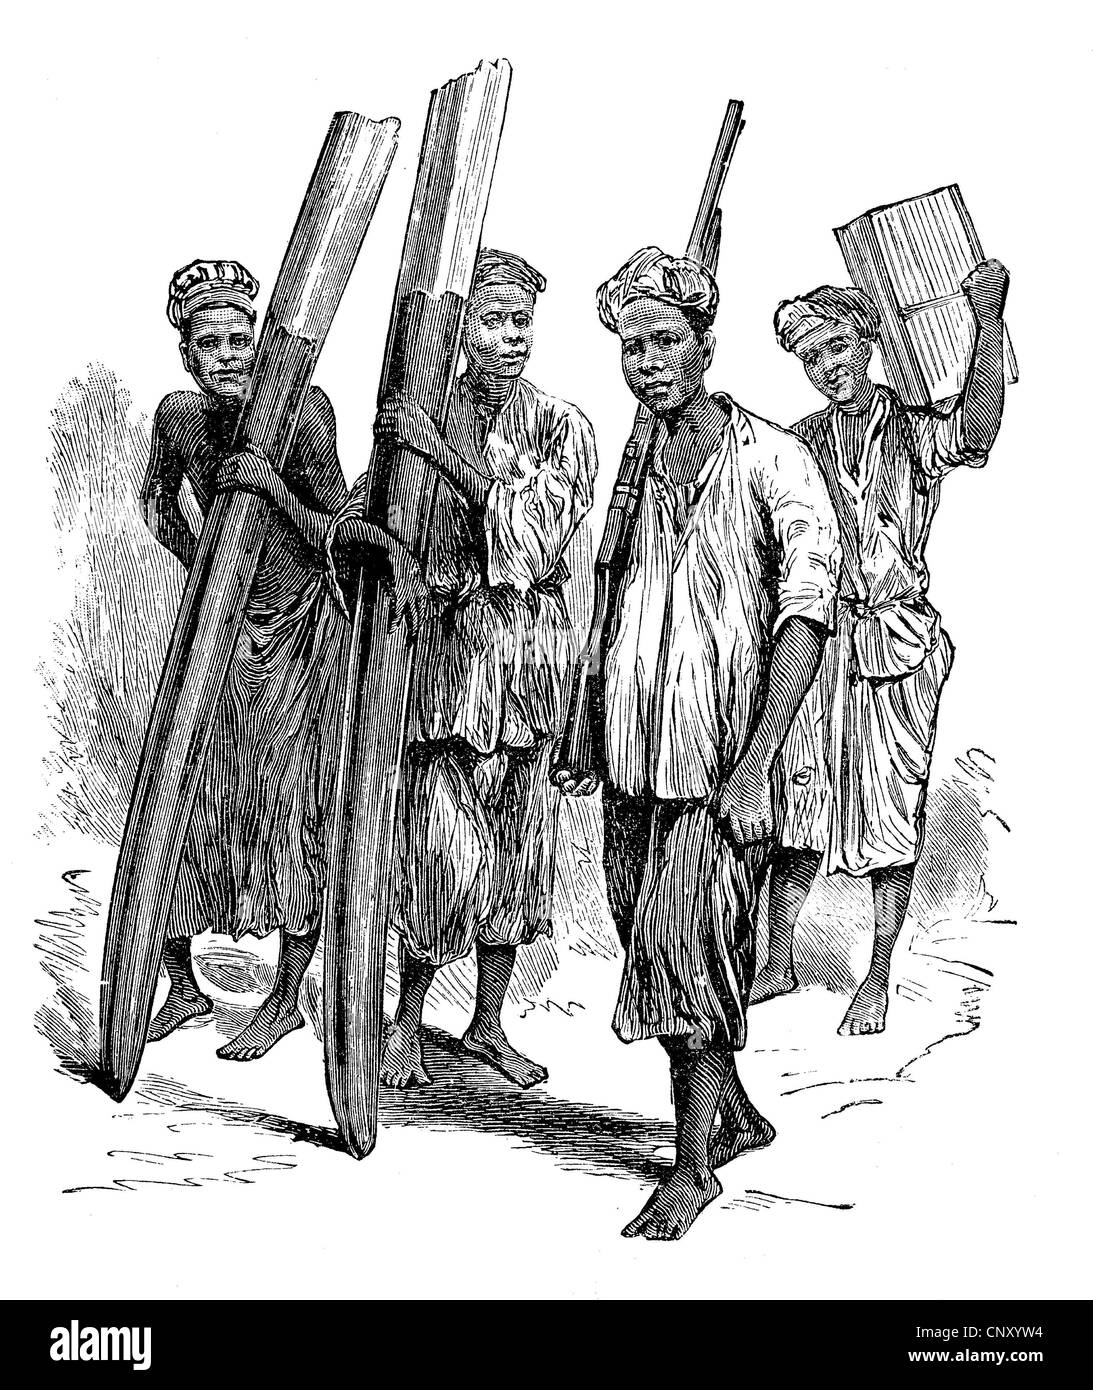 Onere nativo portatori di avorio di trasporto nella Repubblica democratica del Congo, storico xilografia, circa 1888 Foto Stock